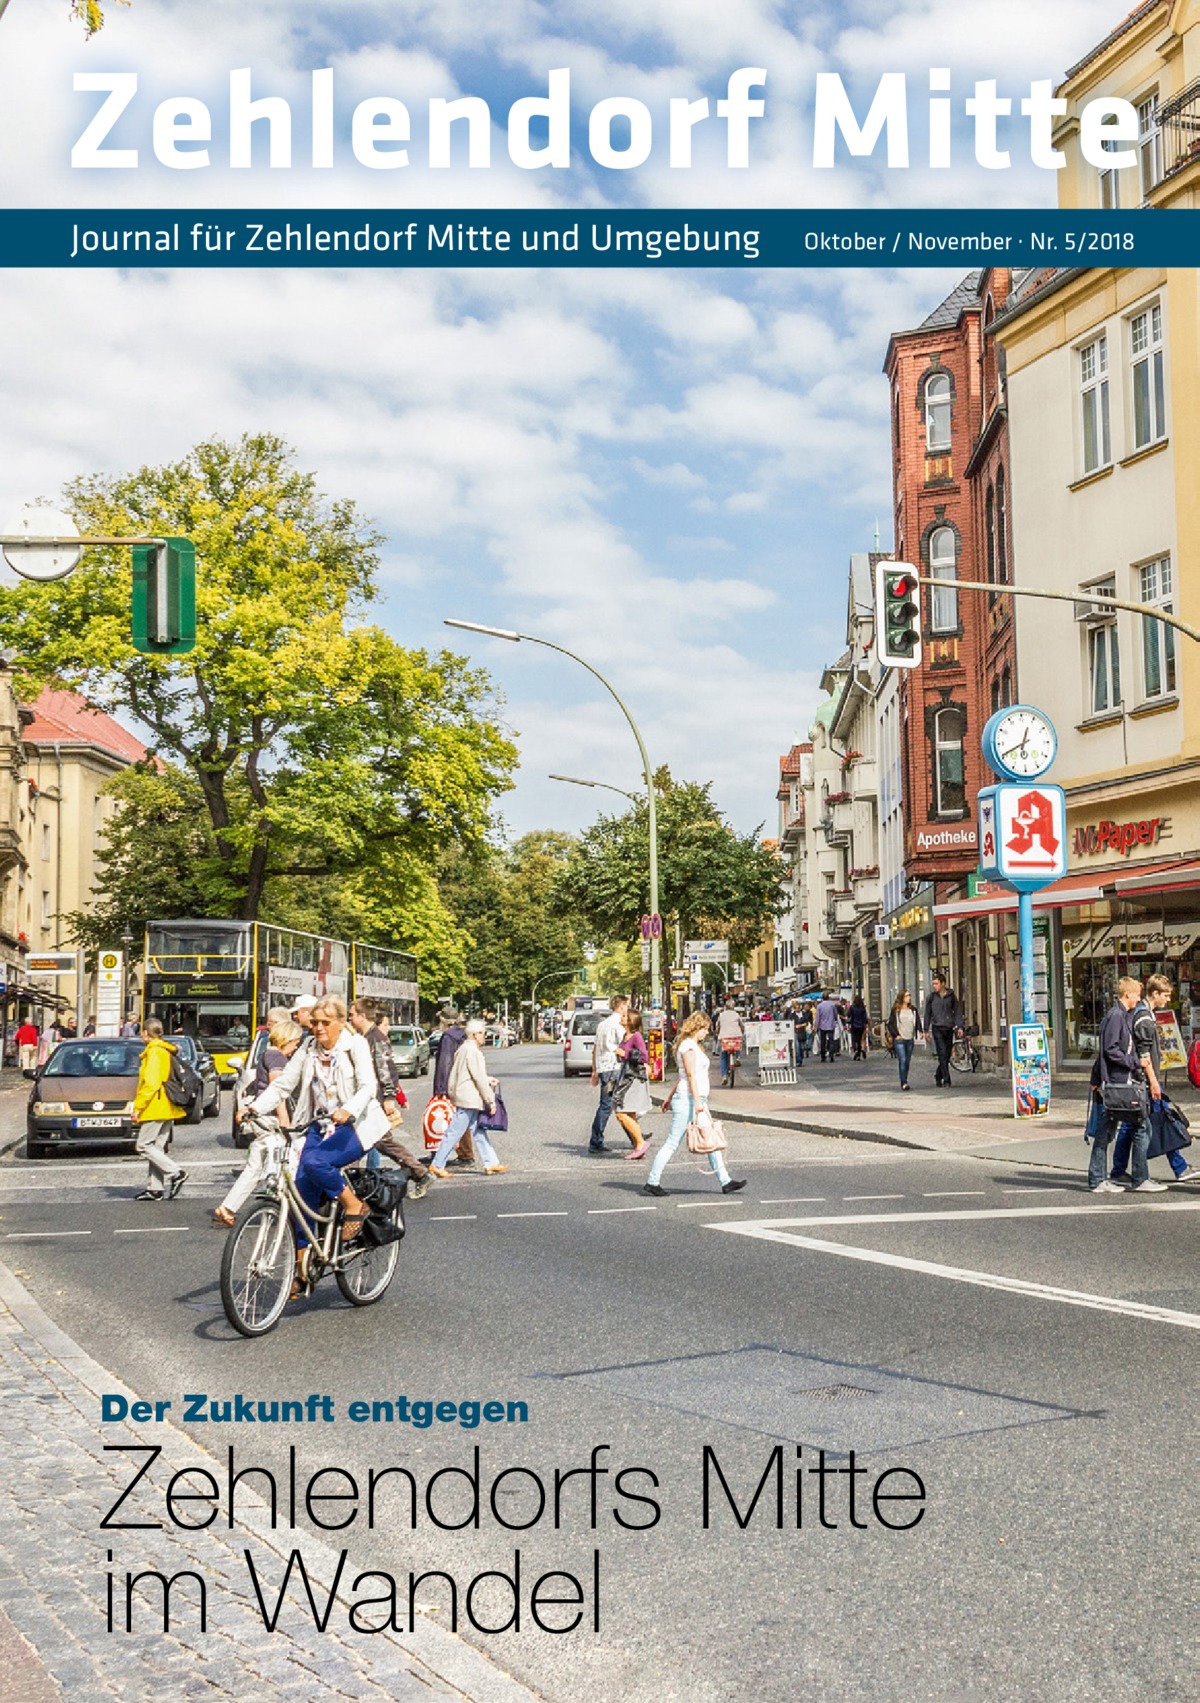 Zehlendorf Mitte Journal für Zehlendorf Mitte und Umgebung  Der Zukunft entgegen  Oktober / November · Nr. 5/2018  Zehlendorfs Mitte im Wandel